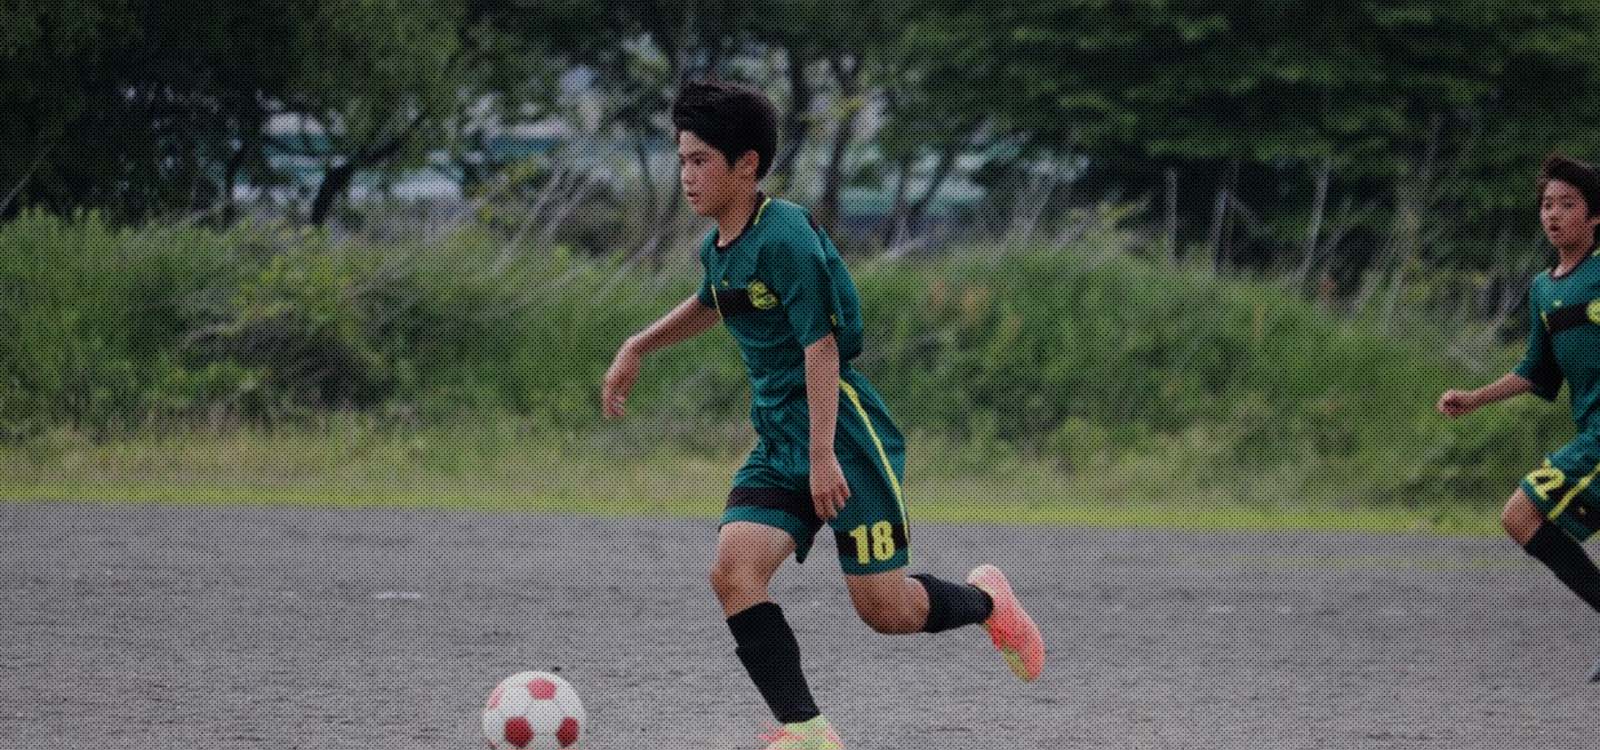 ジョガドール静岡の選手がサッカーボールをドリブルしている写真